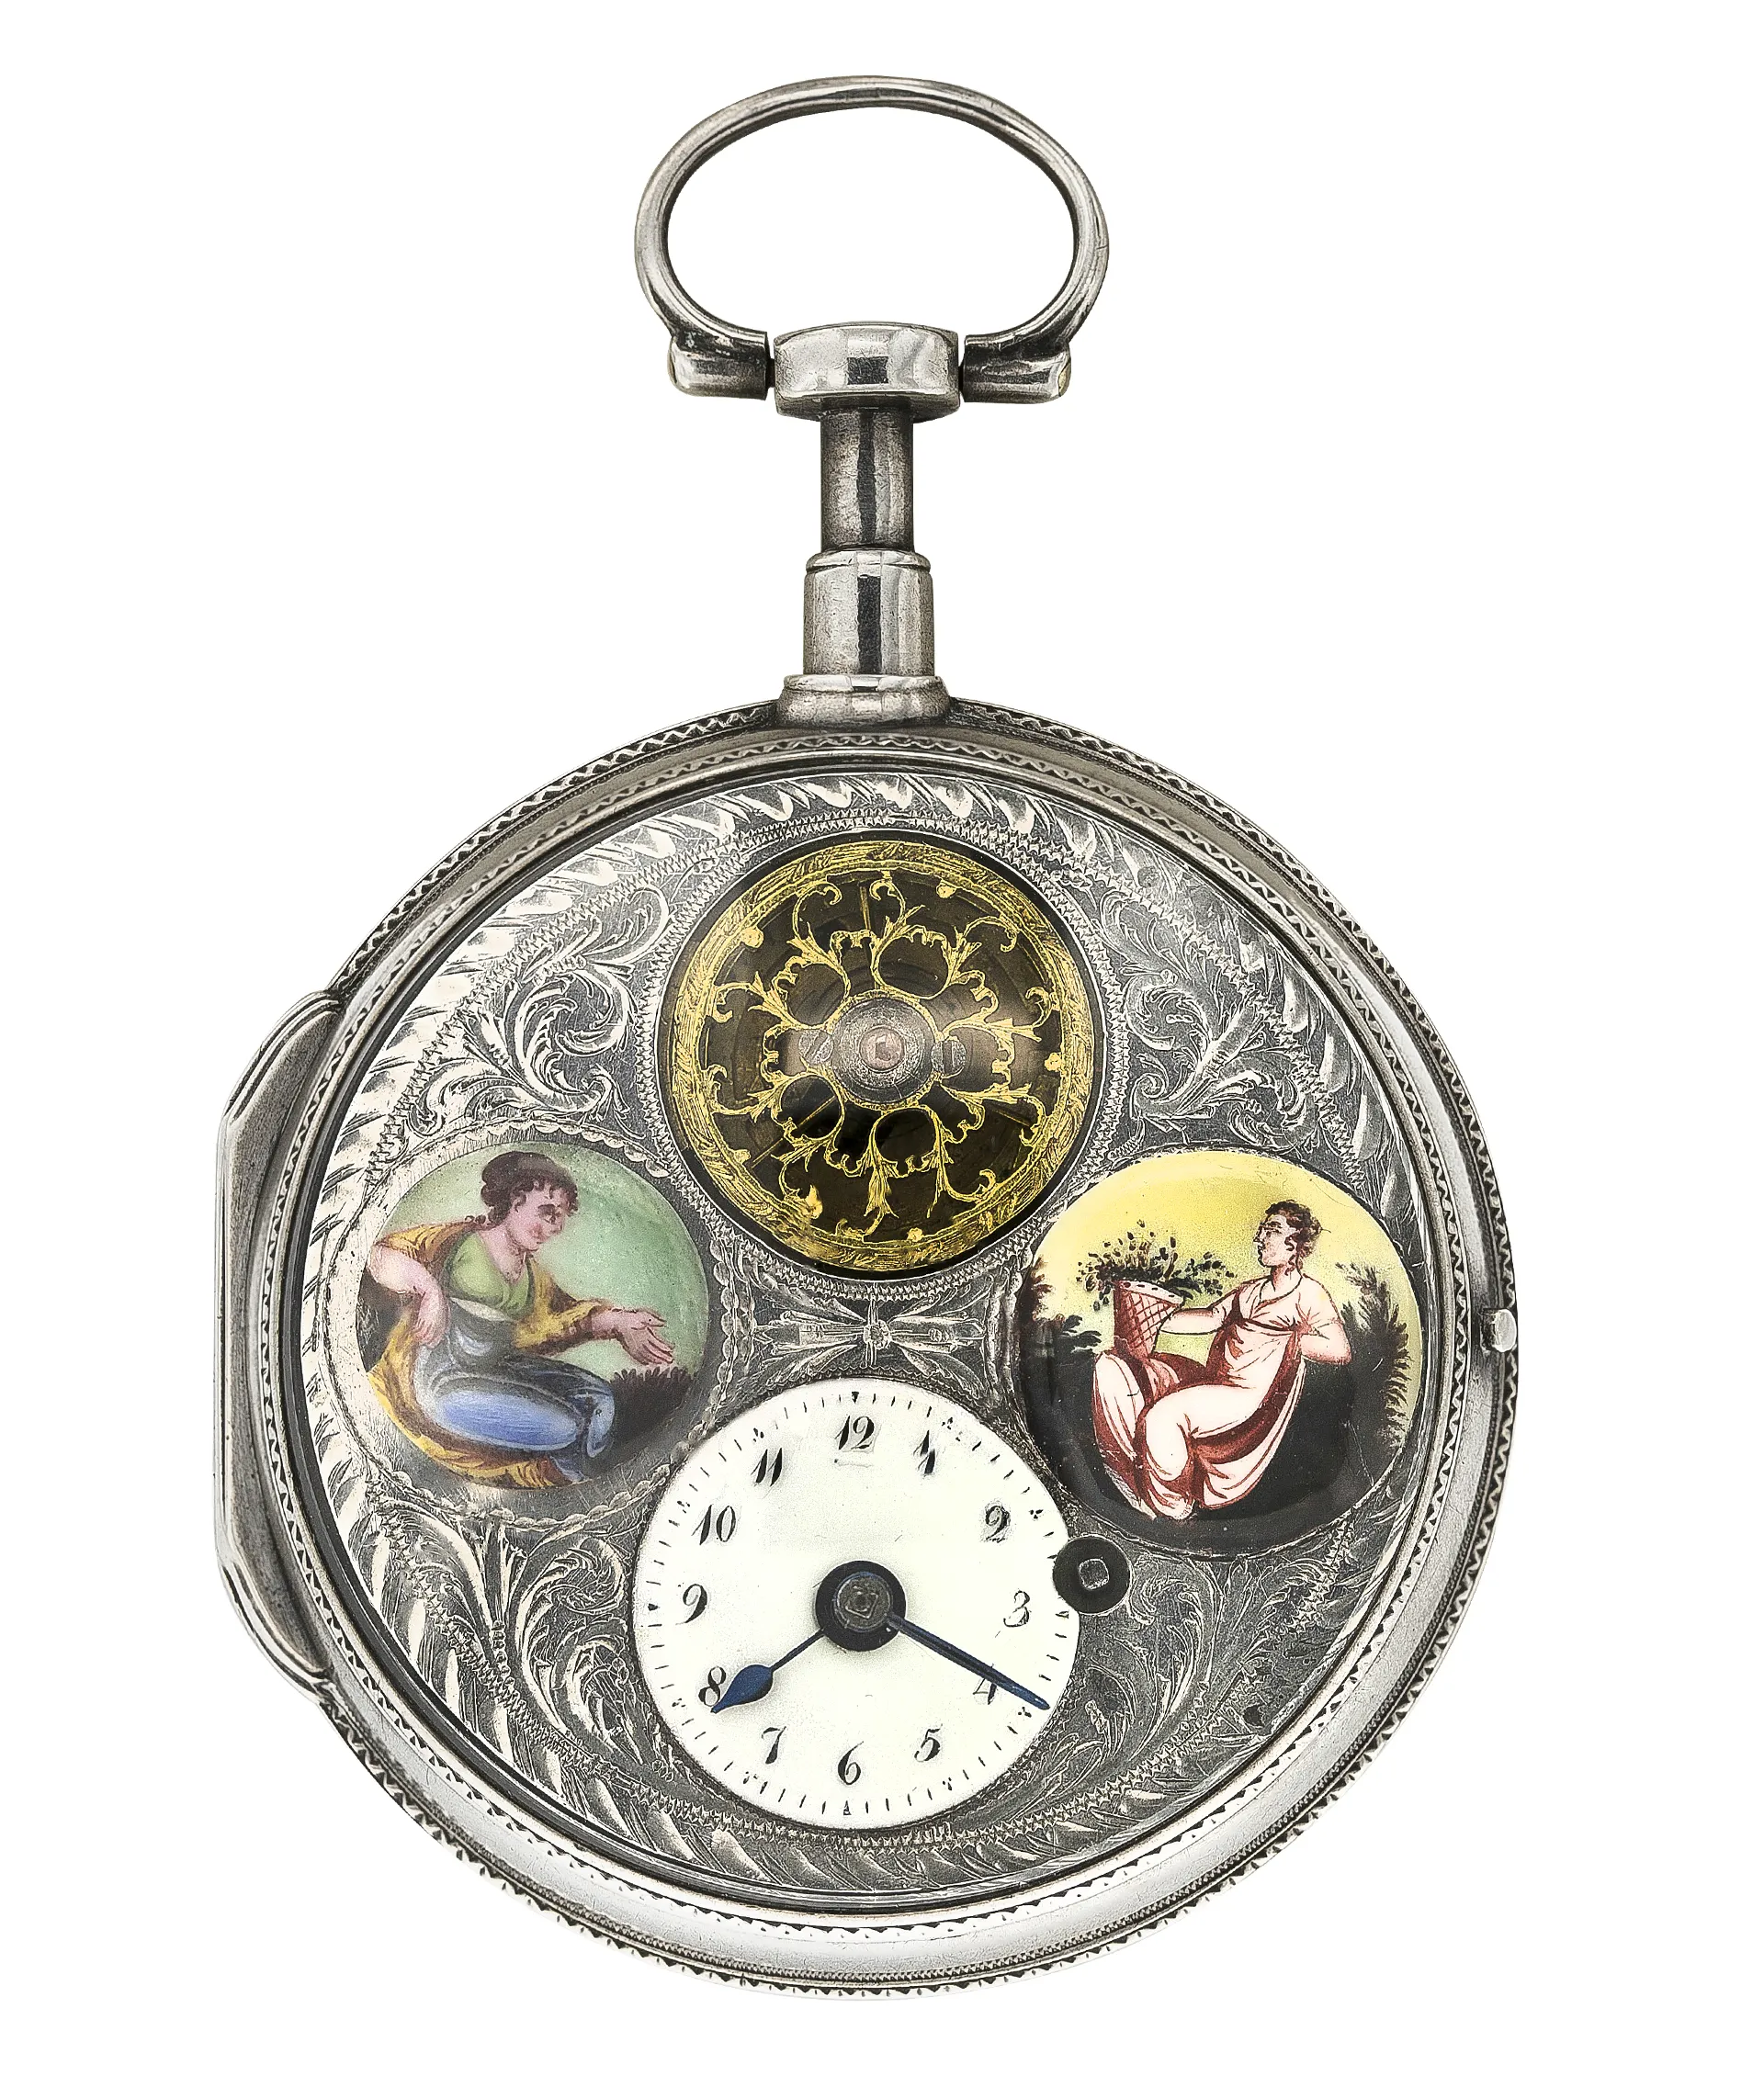 Карманные часы корпус. Механические карманные часы Carl von Zeyten cvz0040rsl. Карманные часы Epos. Карманные часы Антикварные 19 века. Часы карманные механические 2688088 5 серебро.